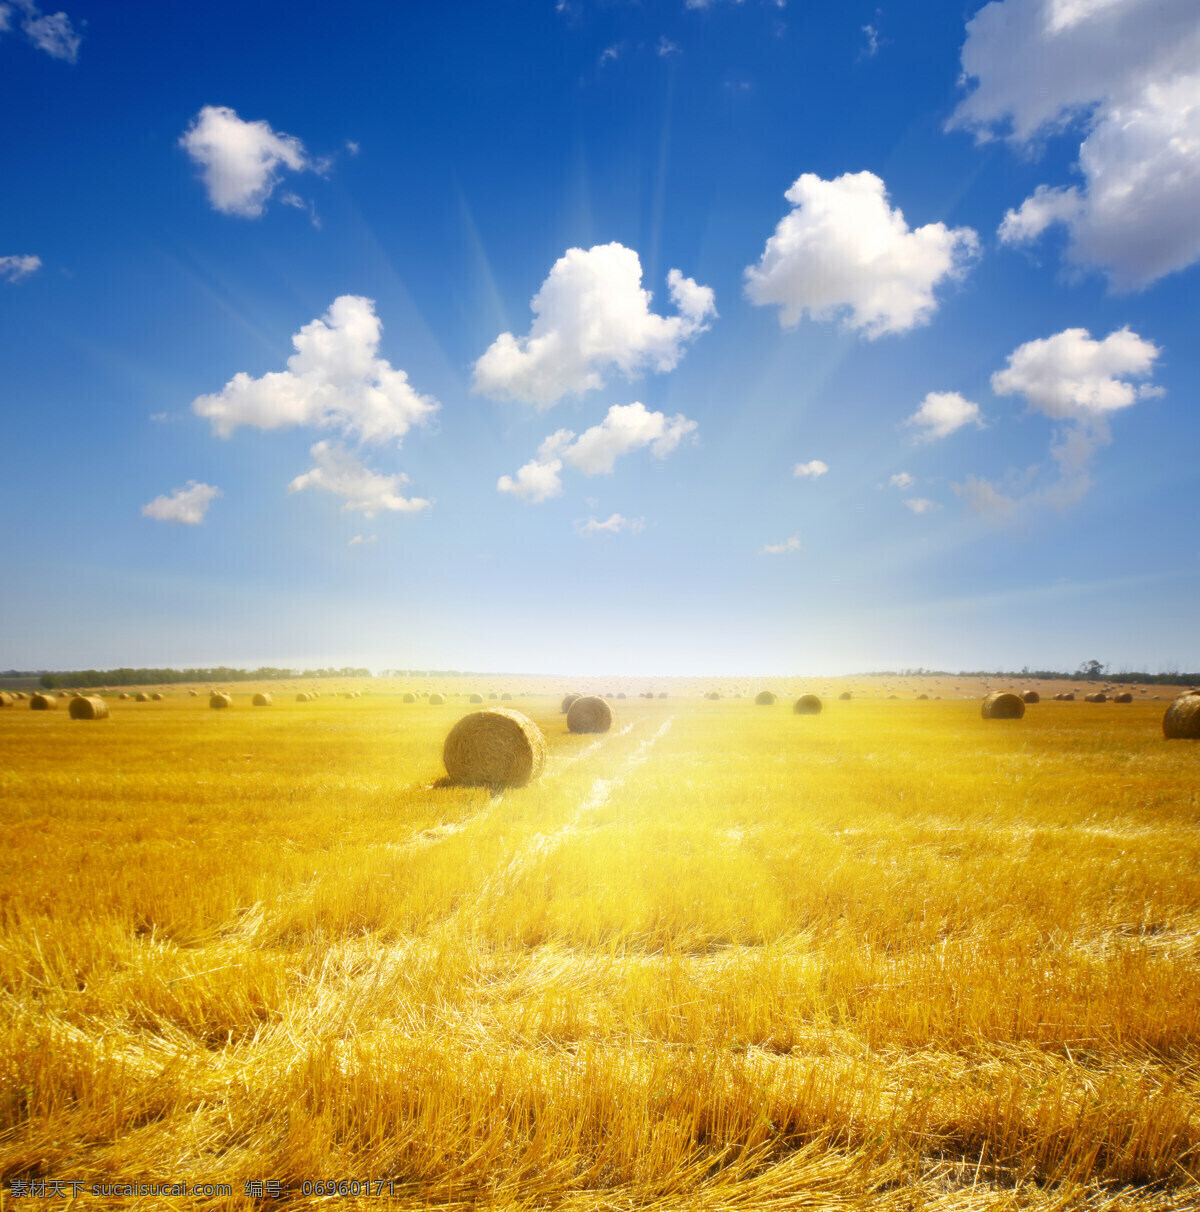 金黄麦田 麦田 小麦 阳光 蓝天 金黄色 麦穗 麦堆 田园风光 自然景观 白云 光线 早晨